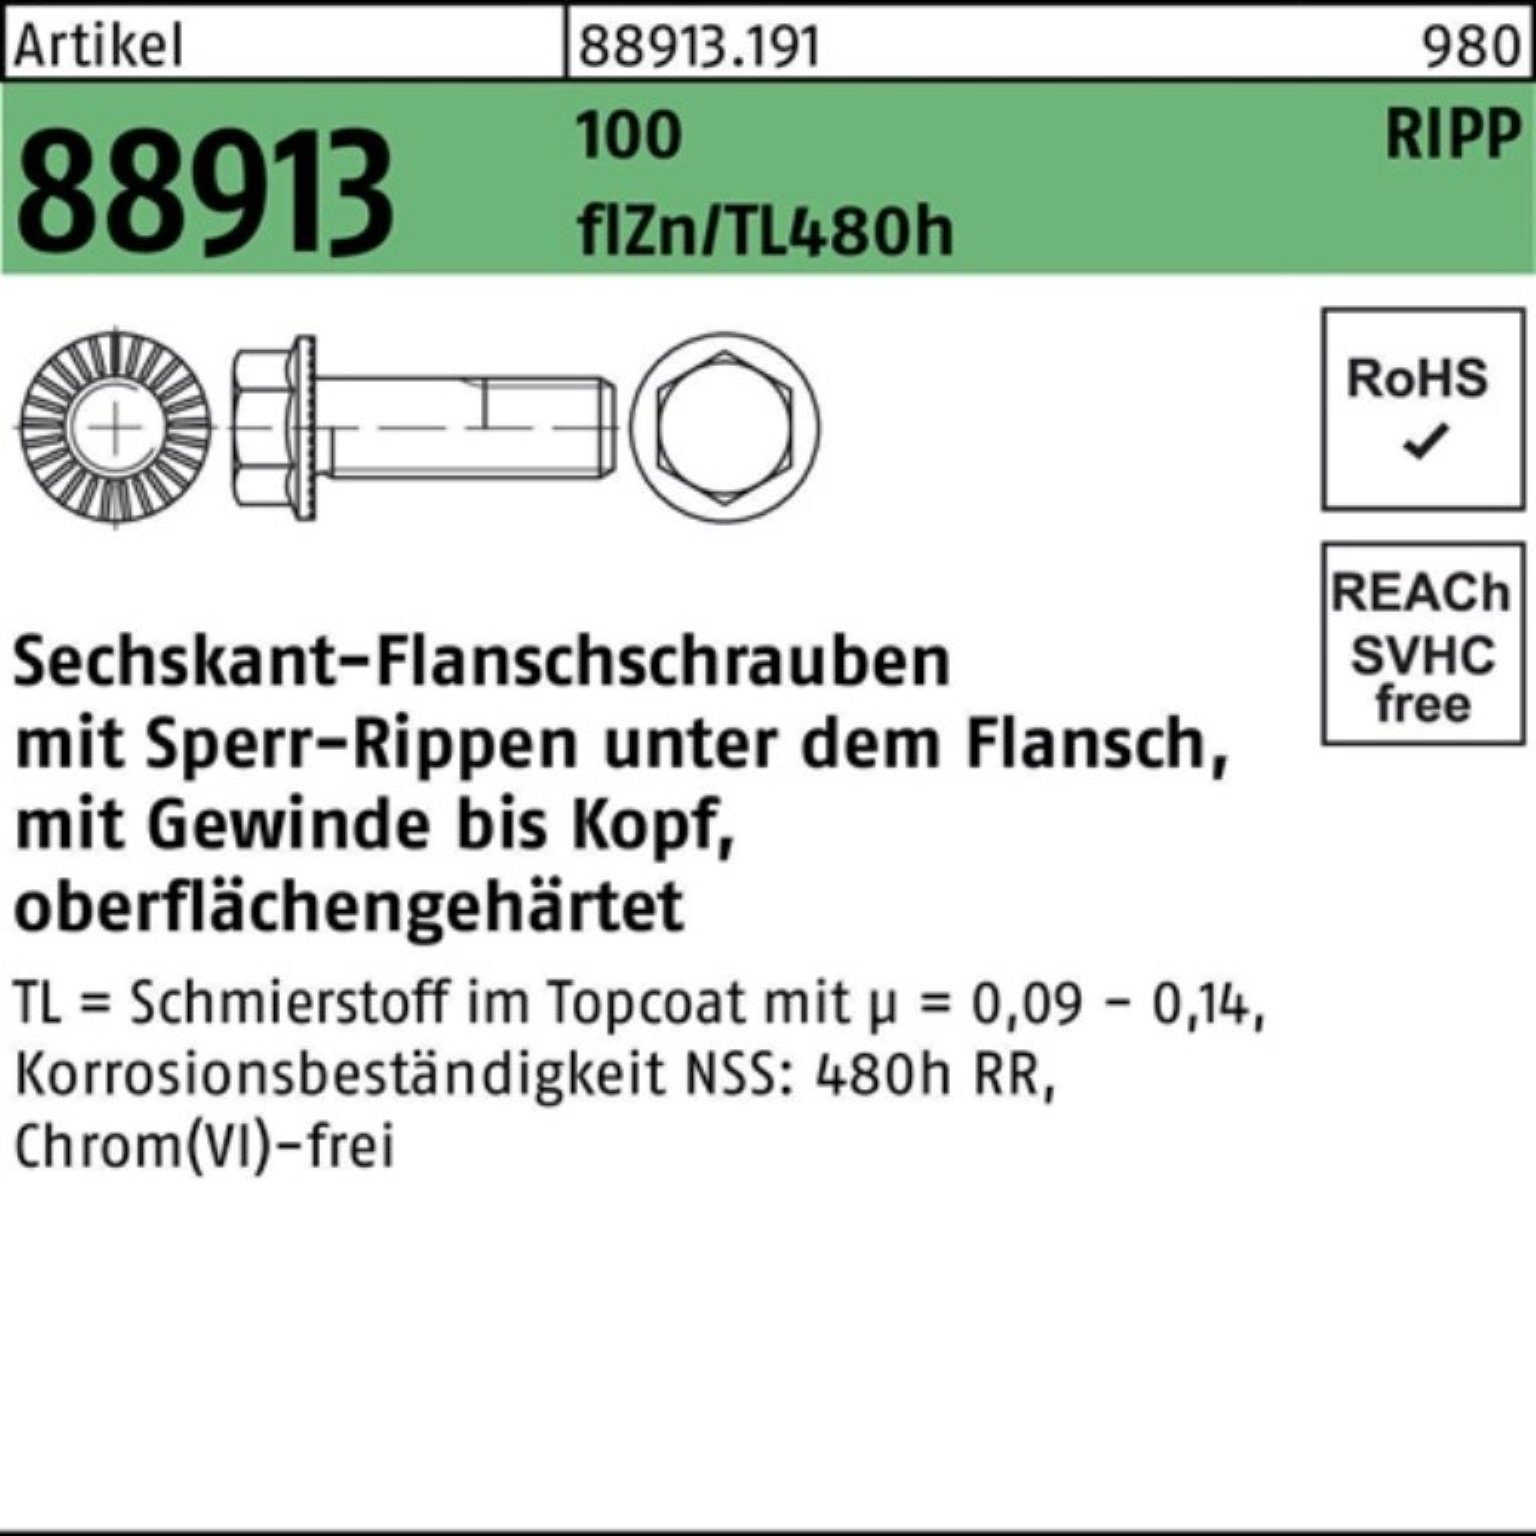 VG f 100er R 88913 Reyher Pack Sechskantflanschschraube 100 Sperr-Ripp Schraube M12x35